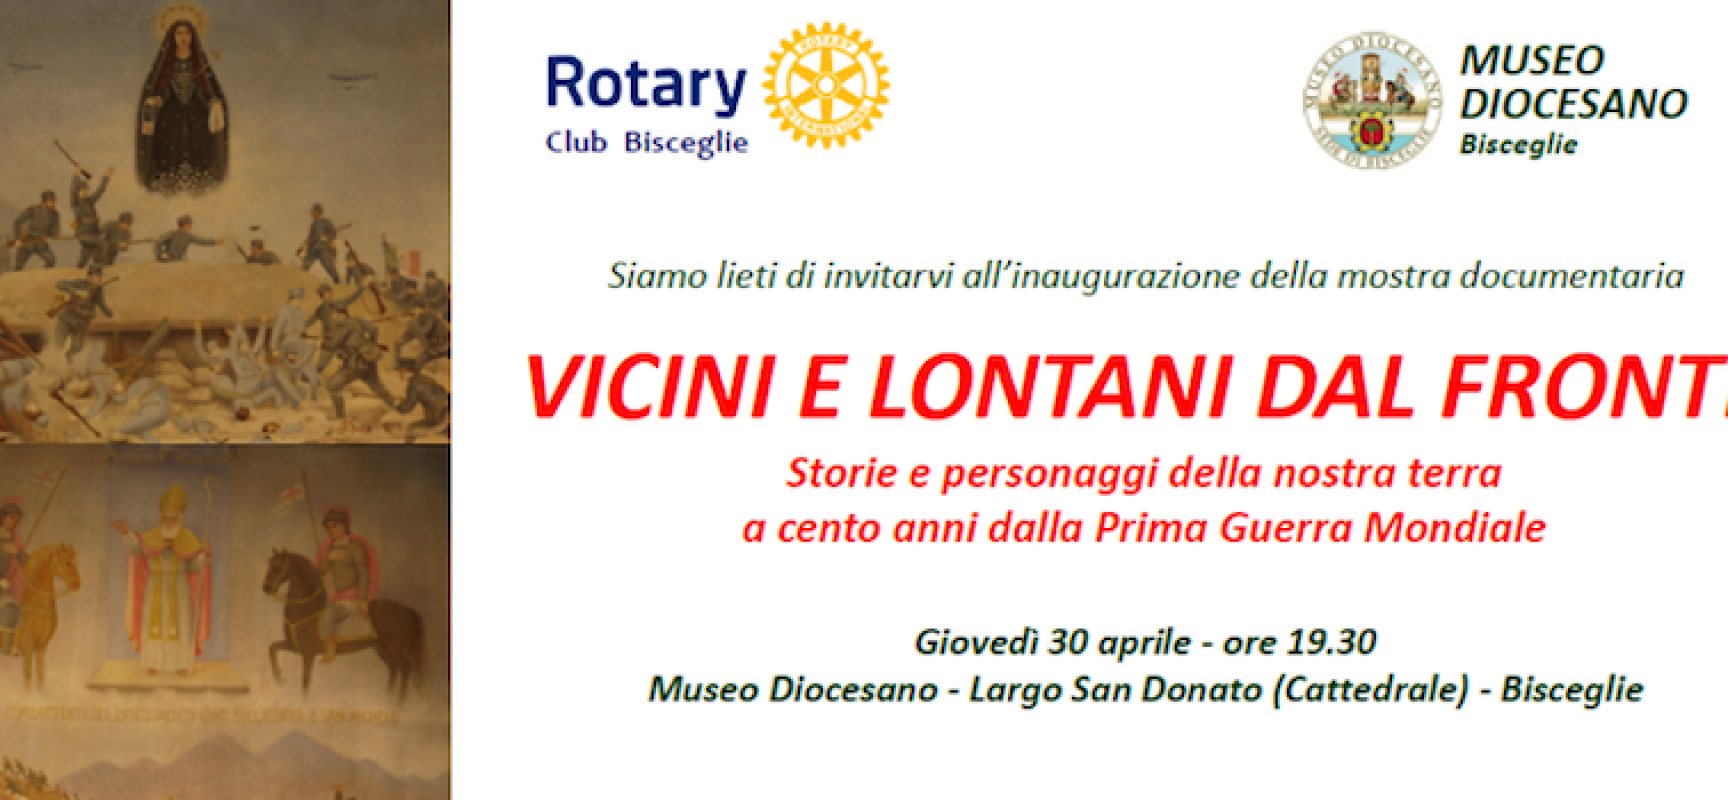 Il Rotary Club inaugura la mostra “Vicini e lontani dal fronte”, in occasione del centenario della Prima Guerra Mondiale